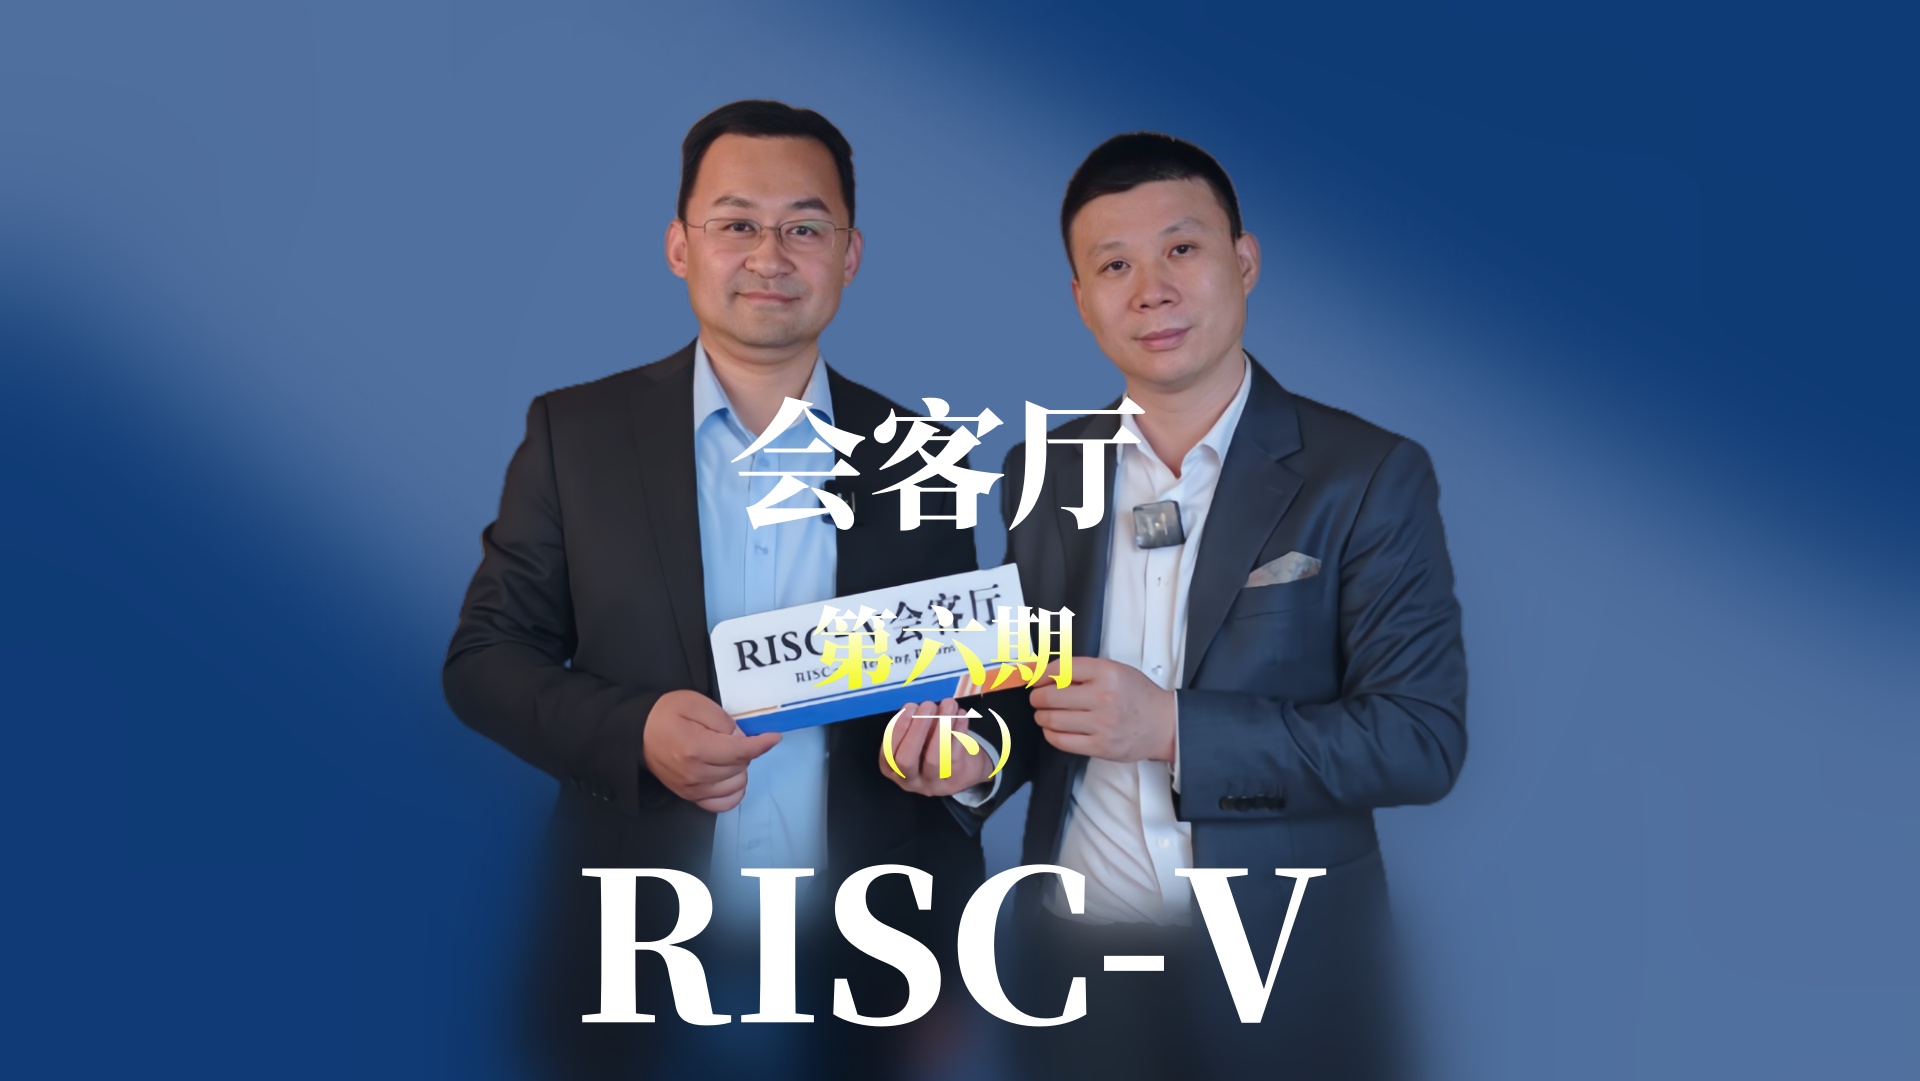 【第六期下】邀请江苏润开鸿的副总裁于大伍共同探索OpenHarmony 与#RISCV 融合发展的趋势与未来